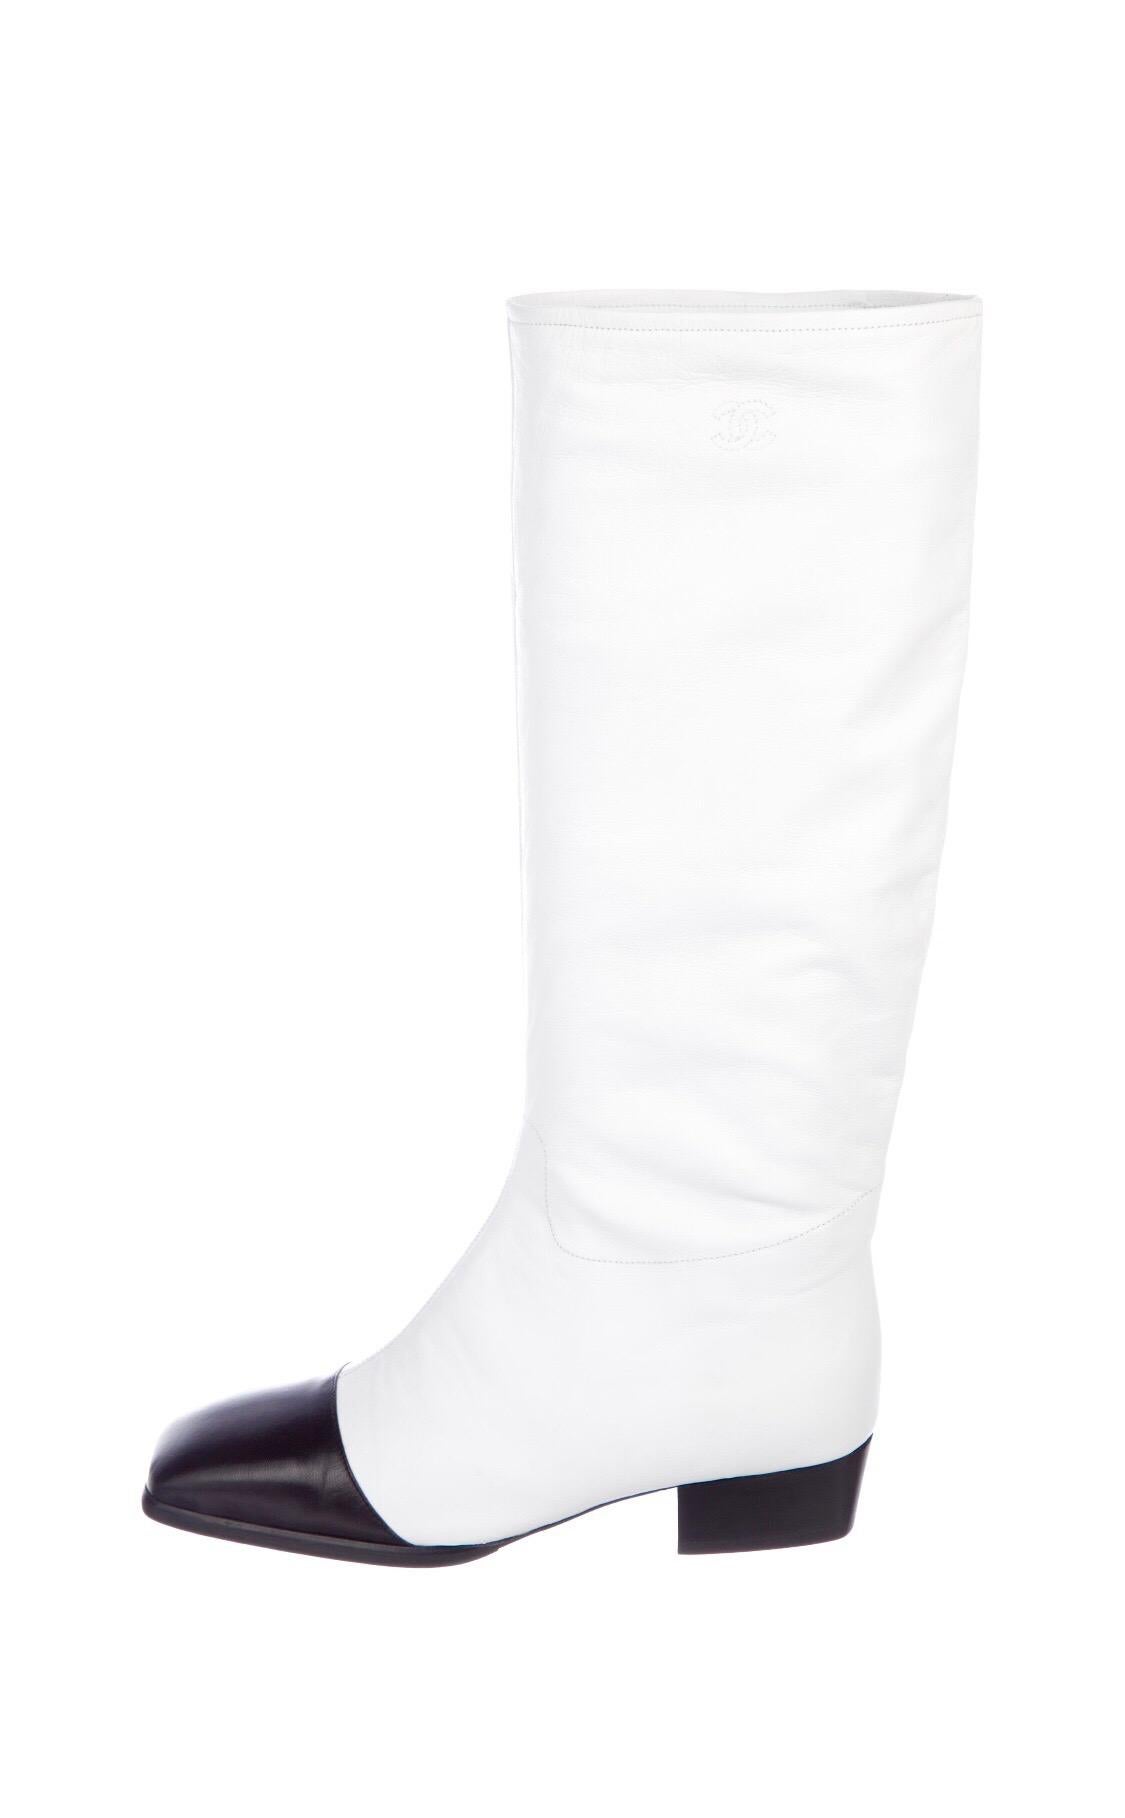 Gris Chanel Bottes de défilé western à bout carré en cuir blanc et noir, Taille 5,5, hiver 1998 en vente